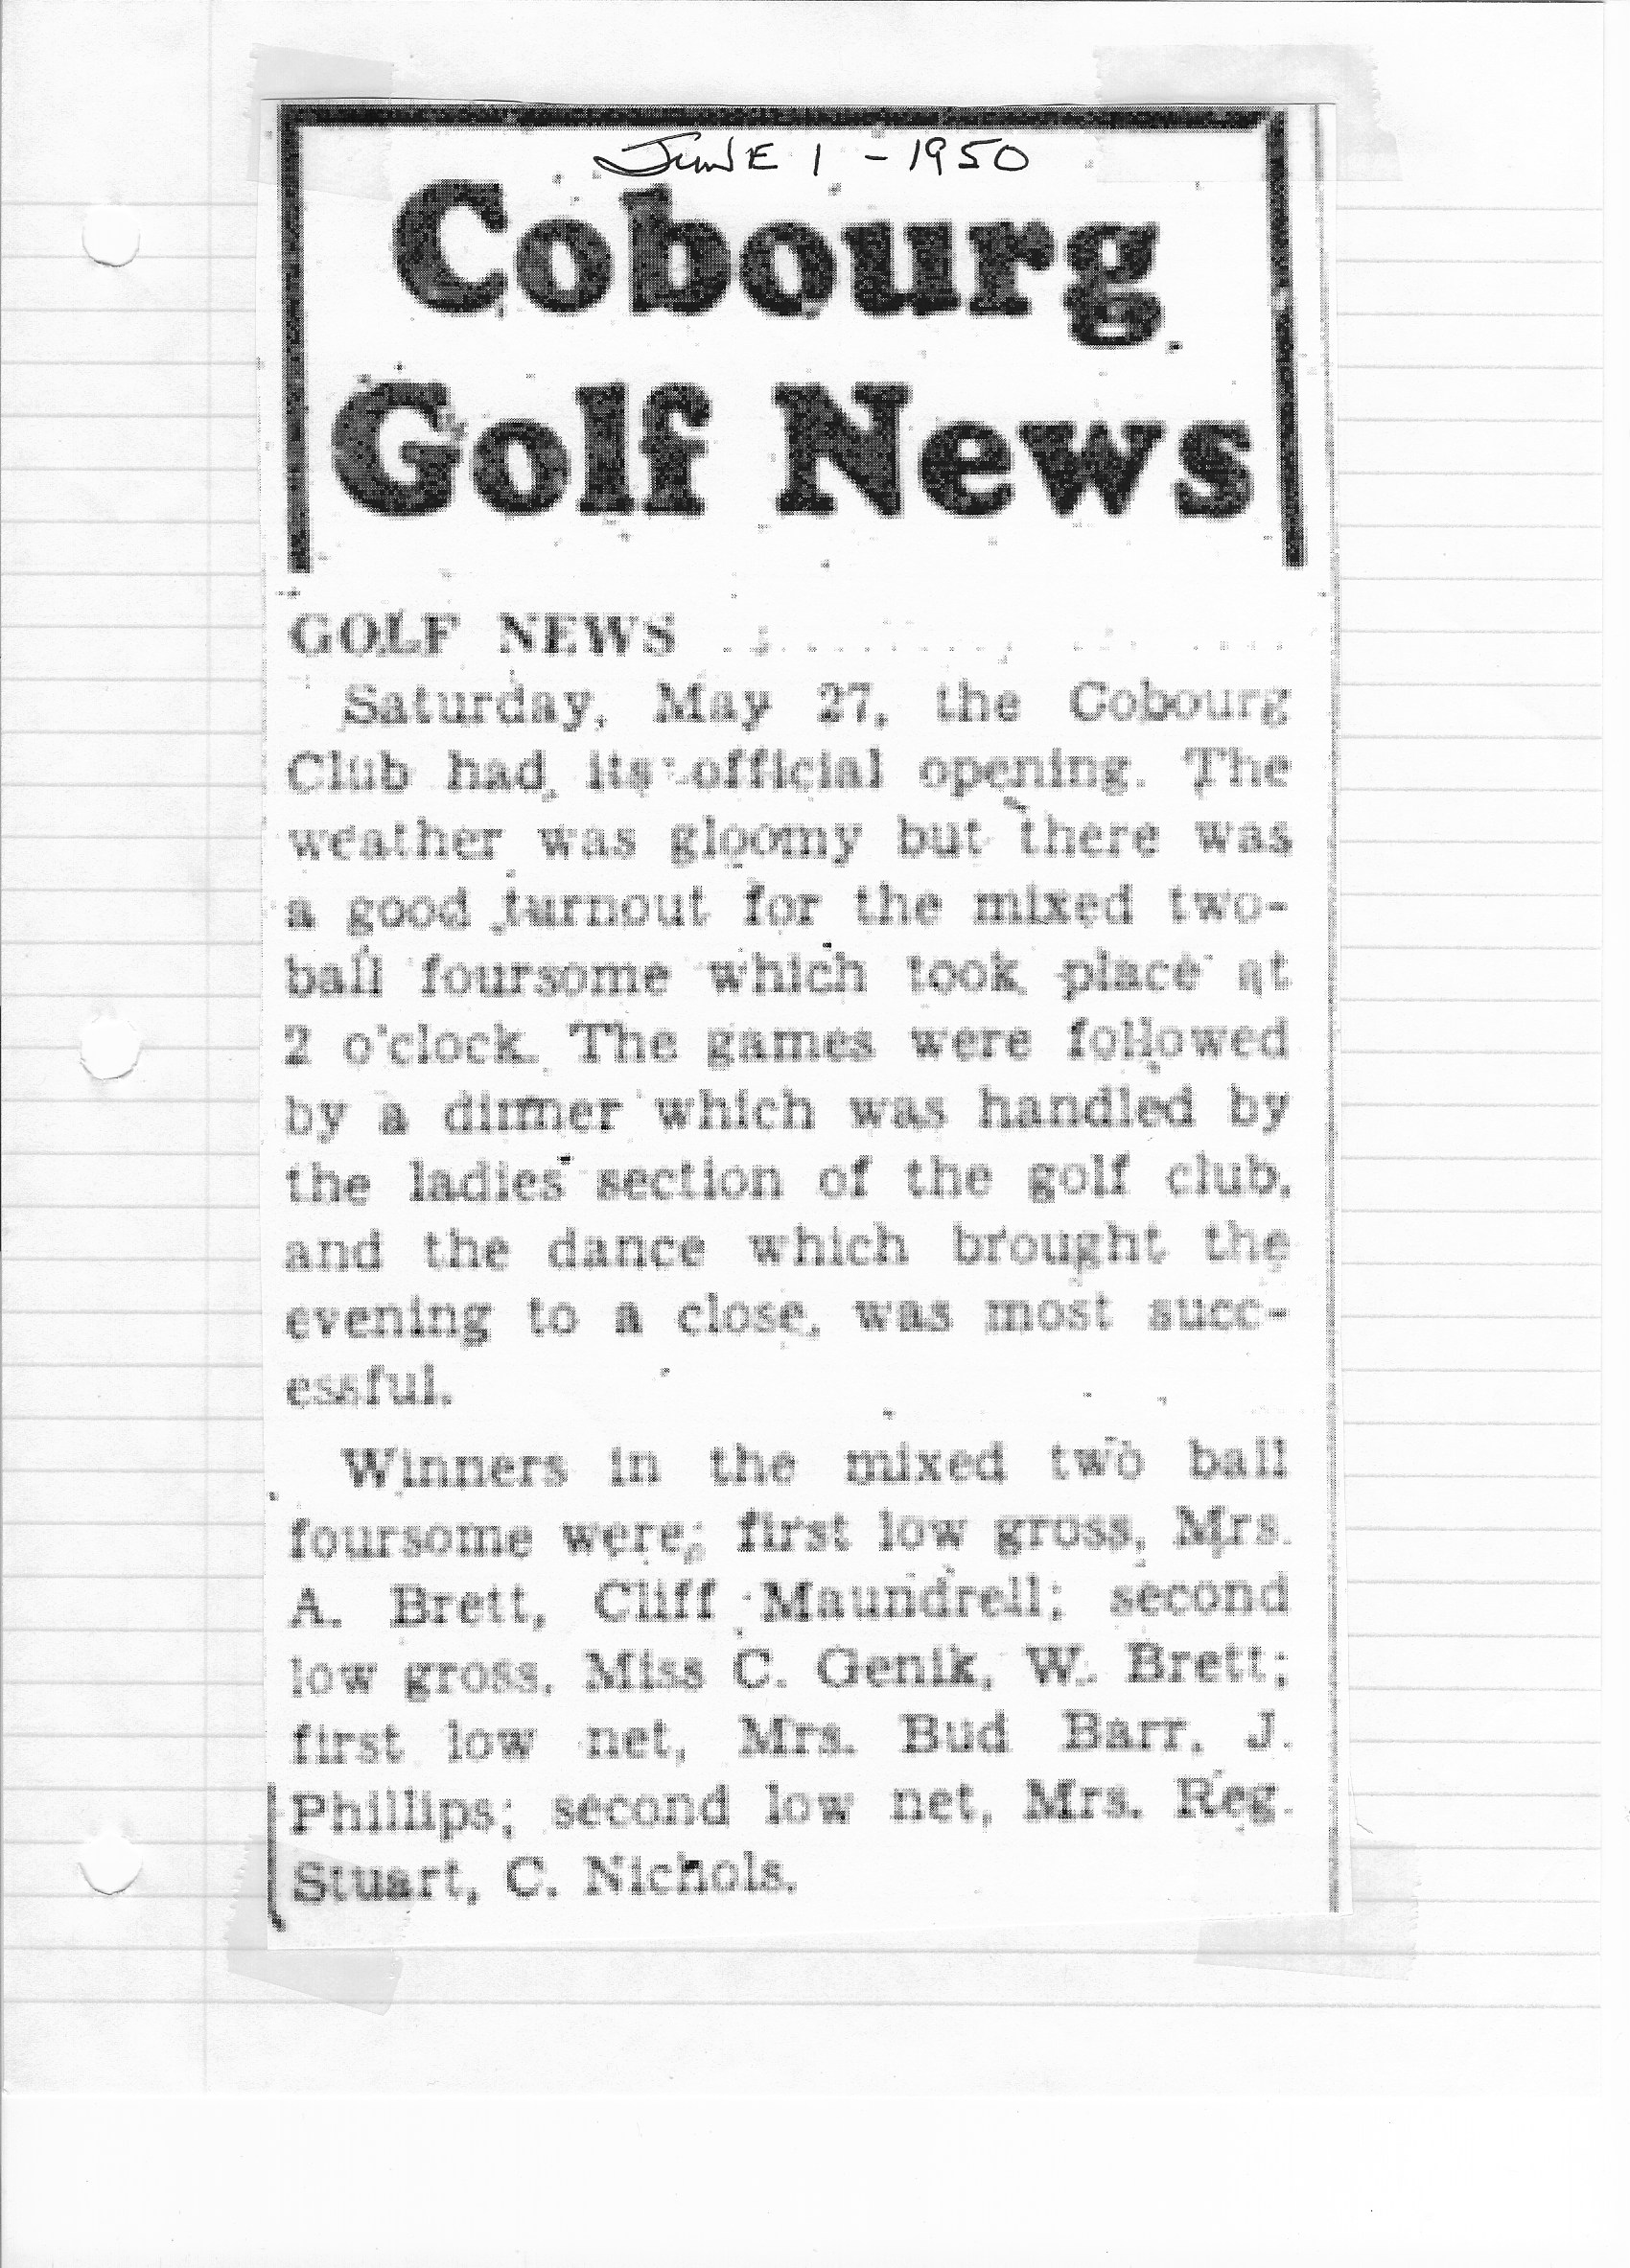 1950-06-01 Golf -News